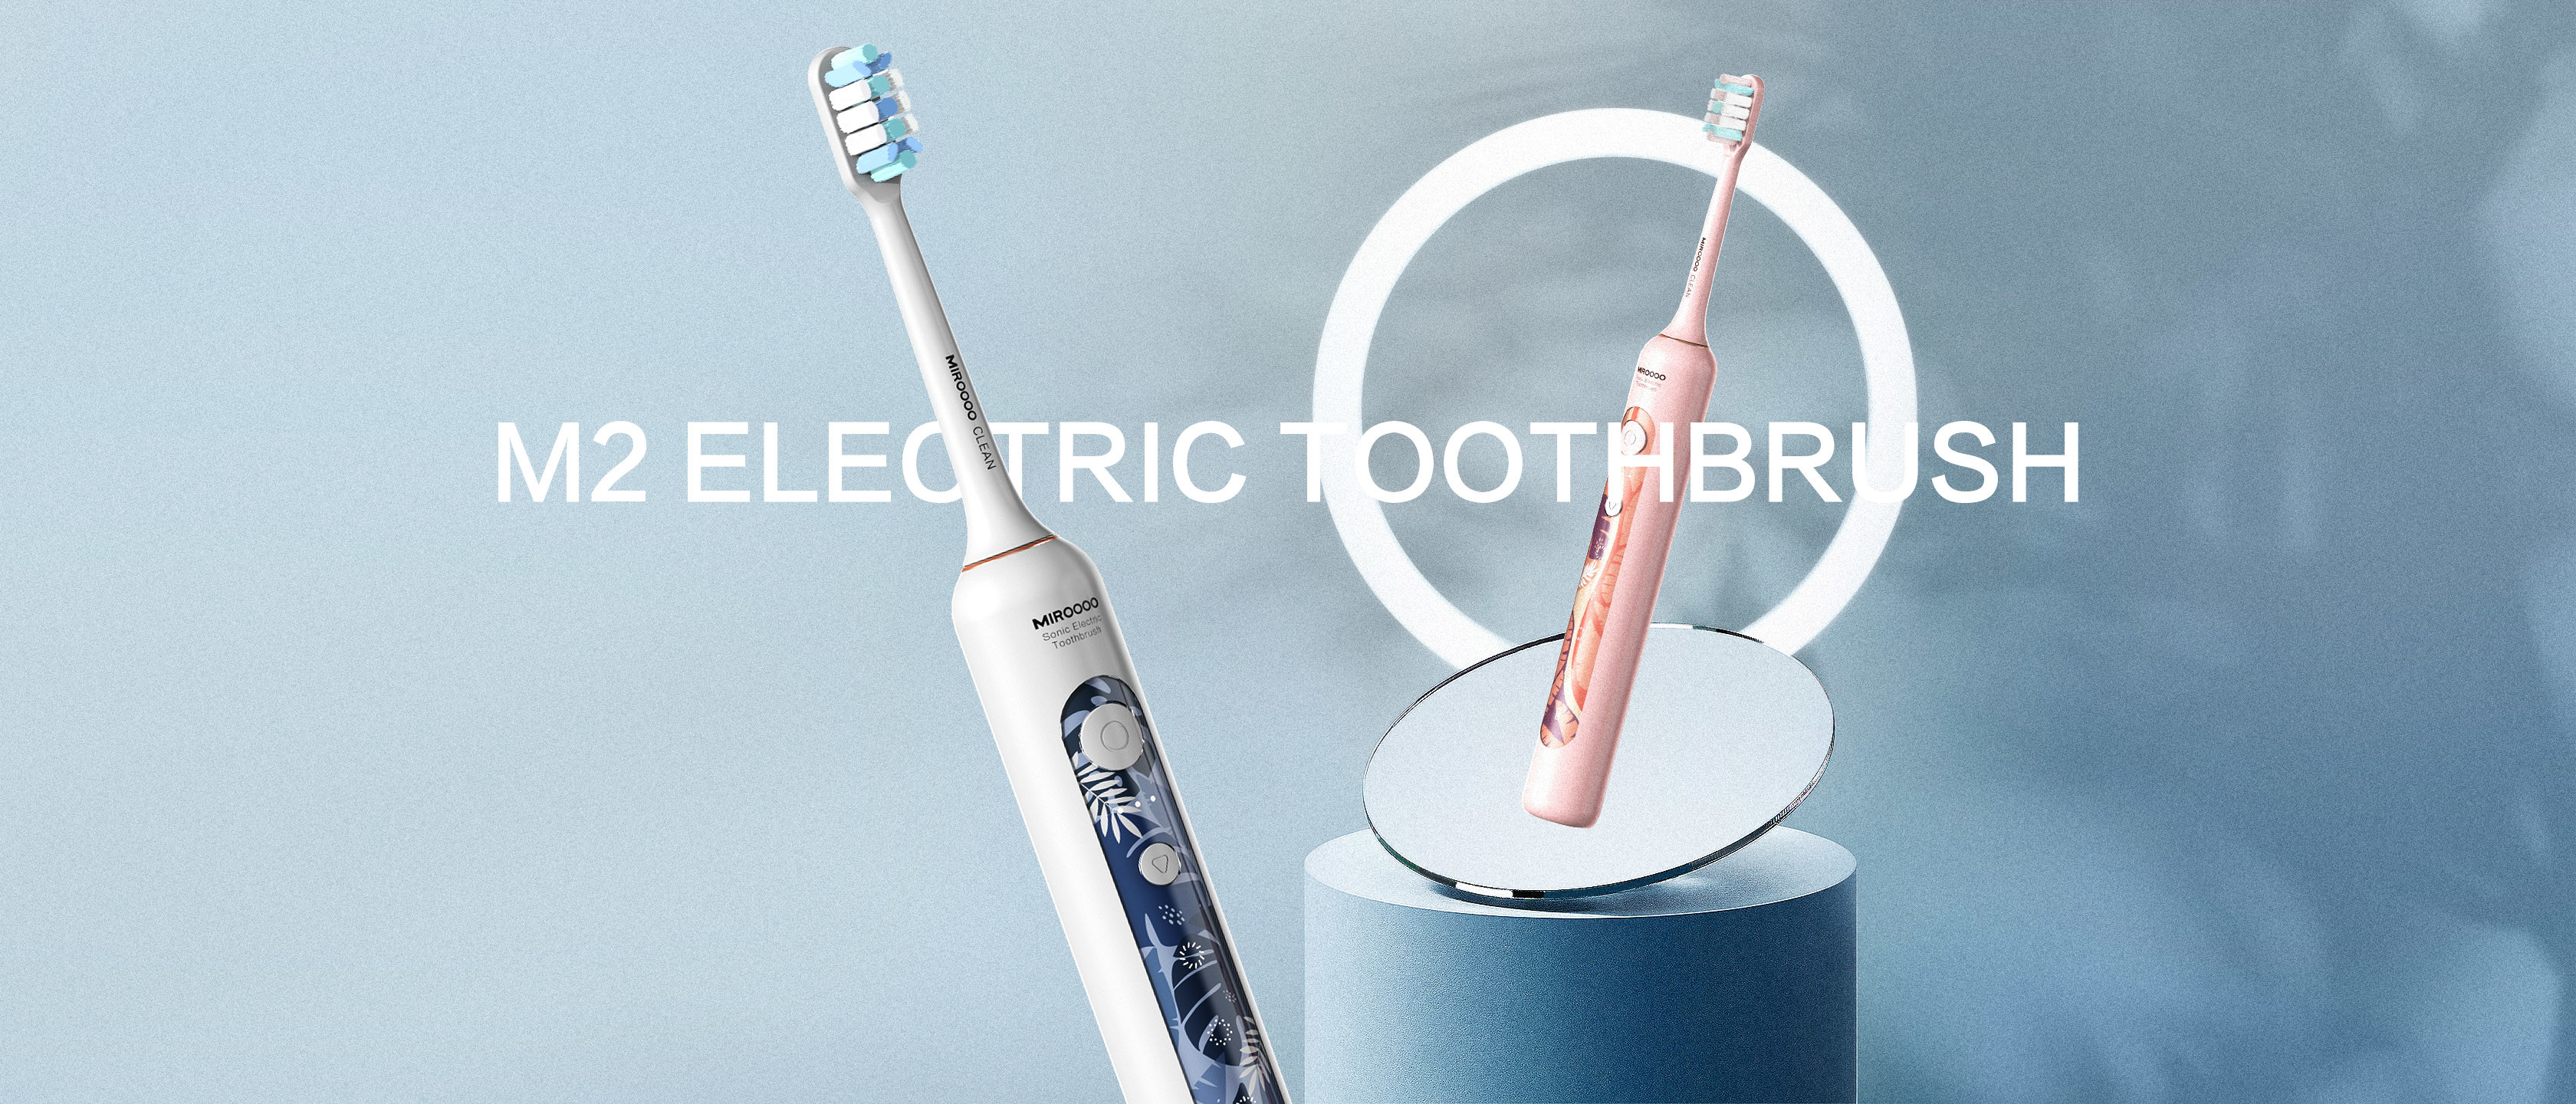 ποιότητας Προφορική ηλεκτρική οδοντόβουρτσα προσοχής Εργοστάσιο